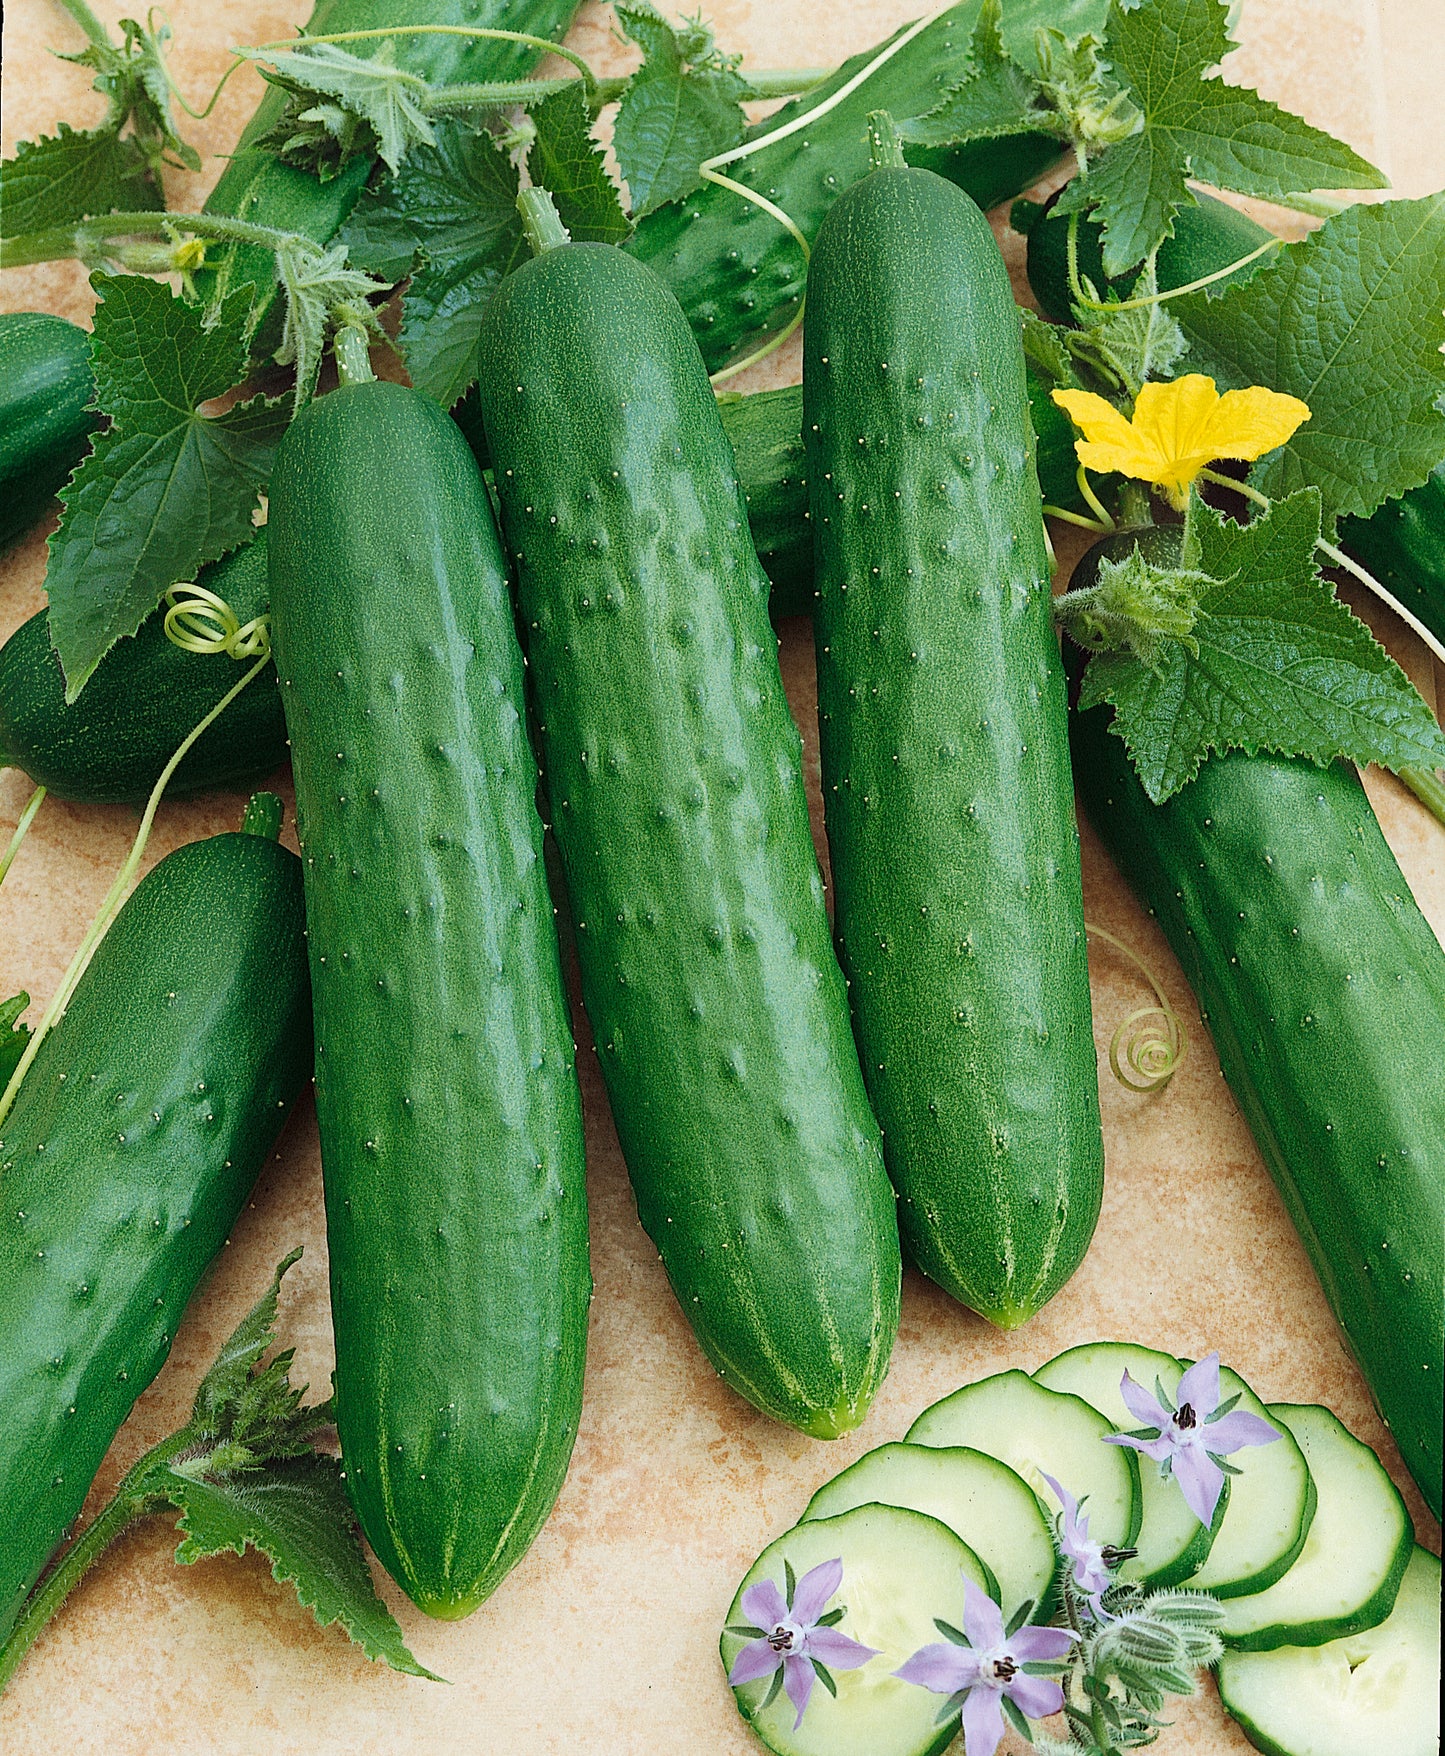 Saladmore Bush F1 Cucumber